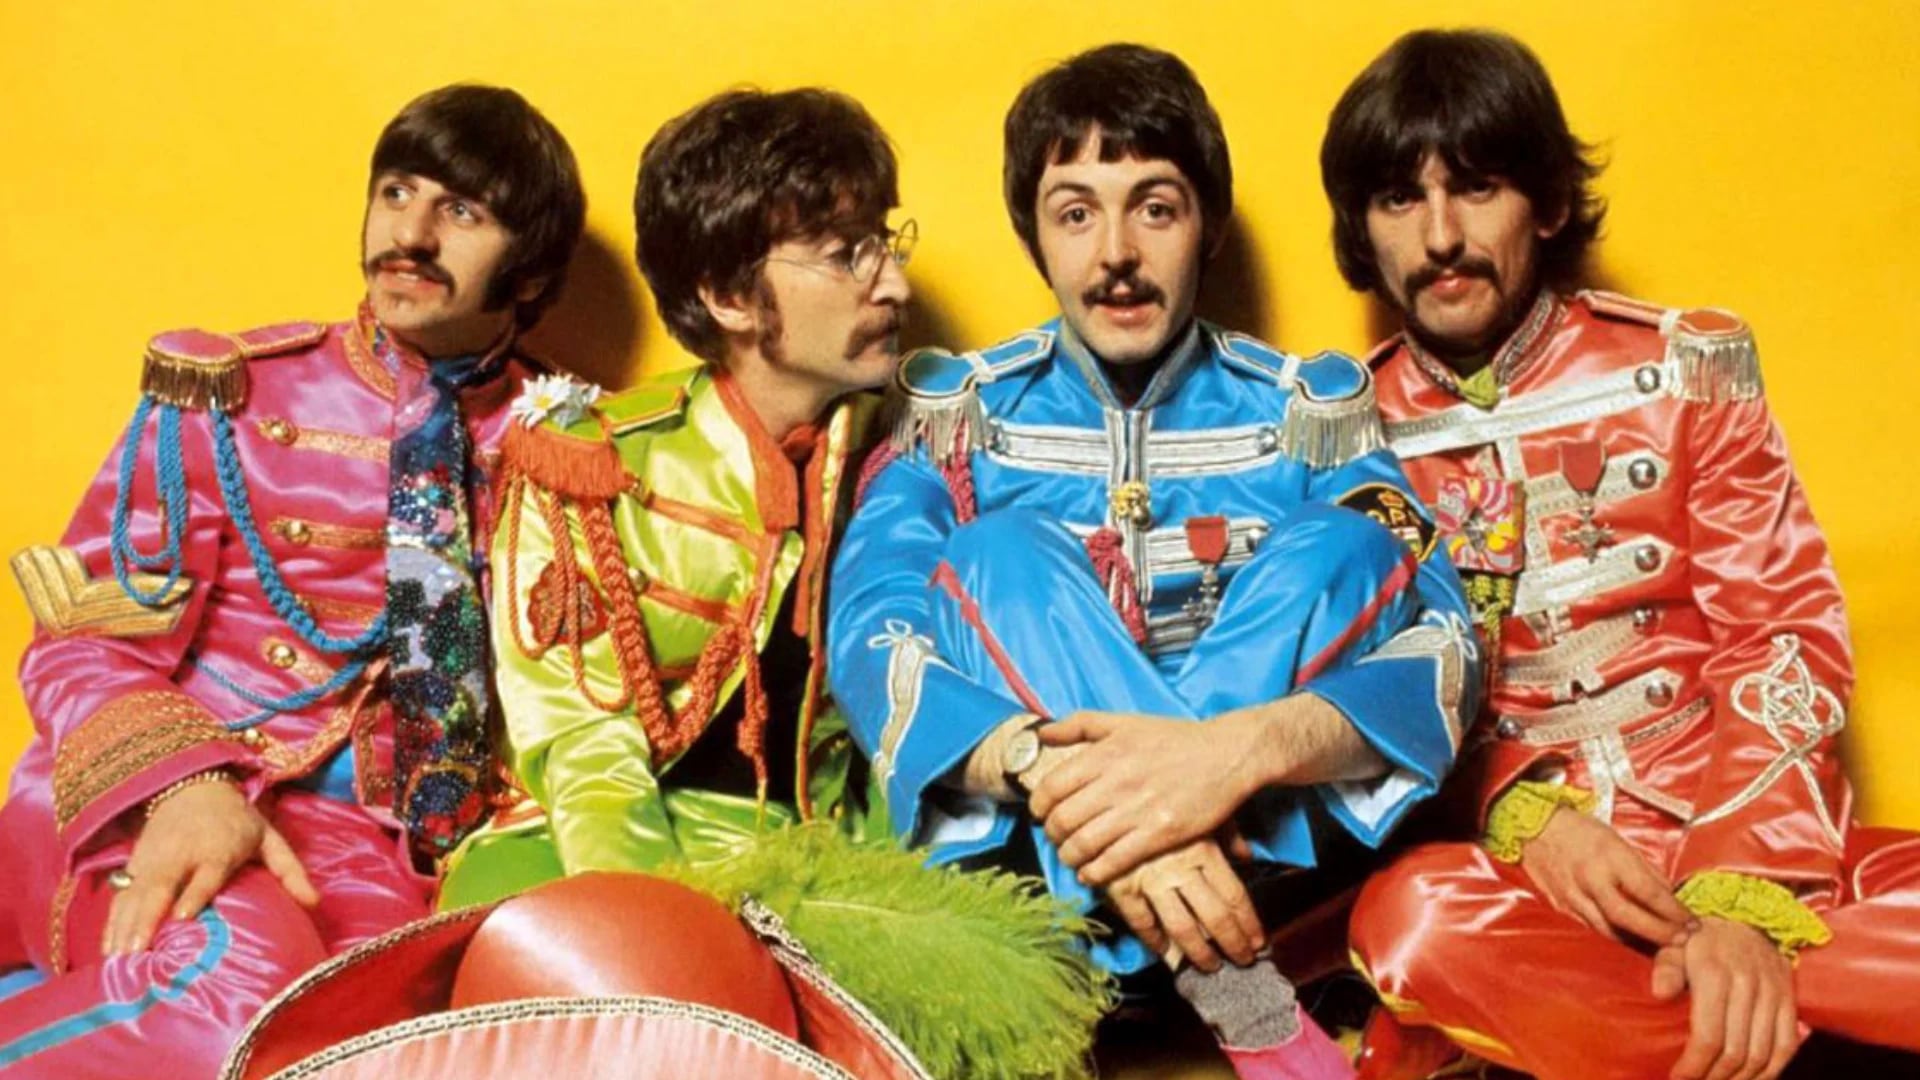 Ringo Starr tiene 76 años, John Lennon fue asesinado en 1980, Paul McCartney tiene 74 años y George Harrison murió de cáncer de pulmón en 2001